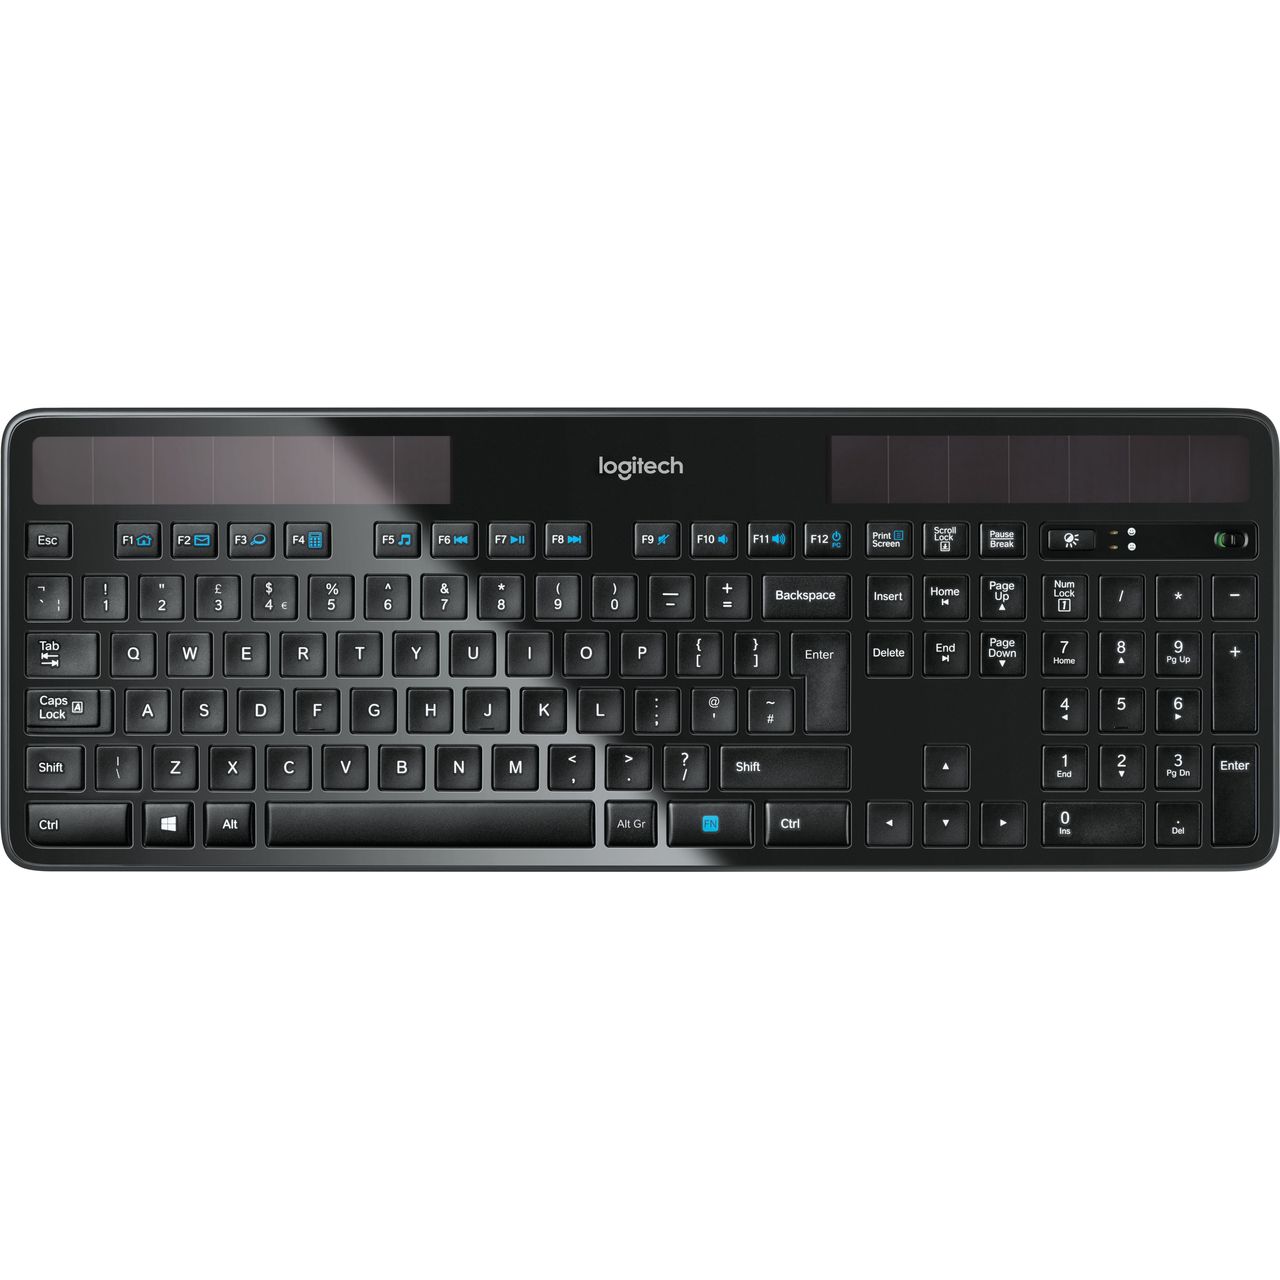 Logitech K750 Wireless USB Keyboard Review